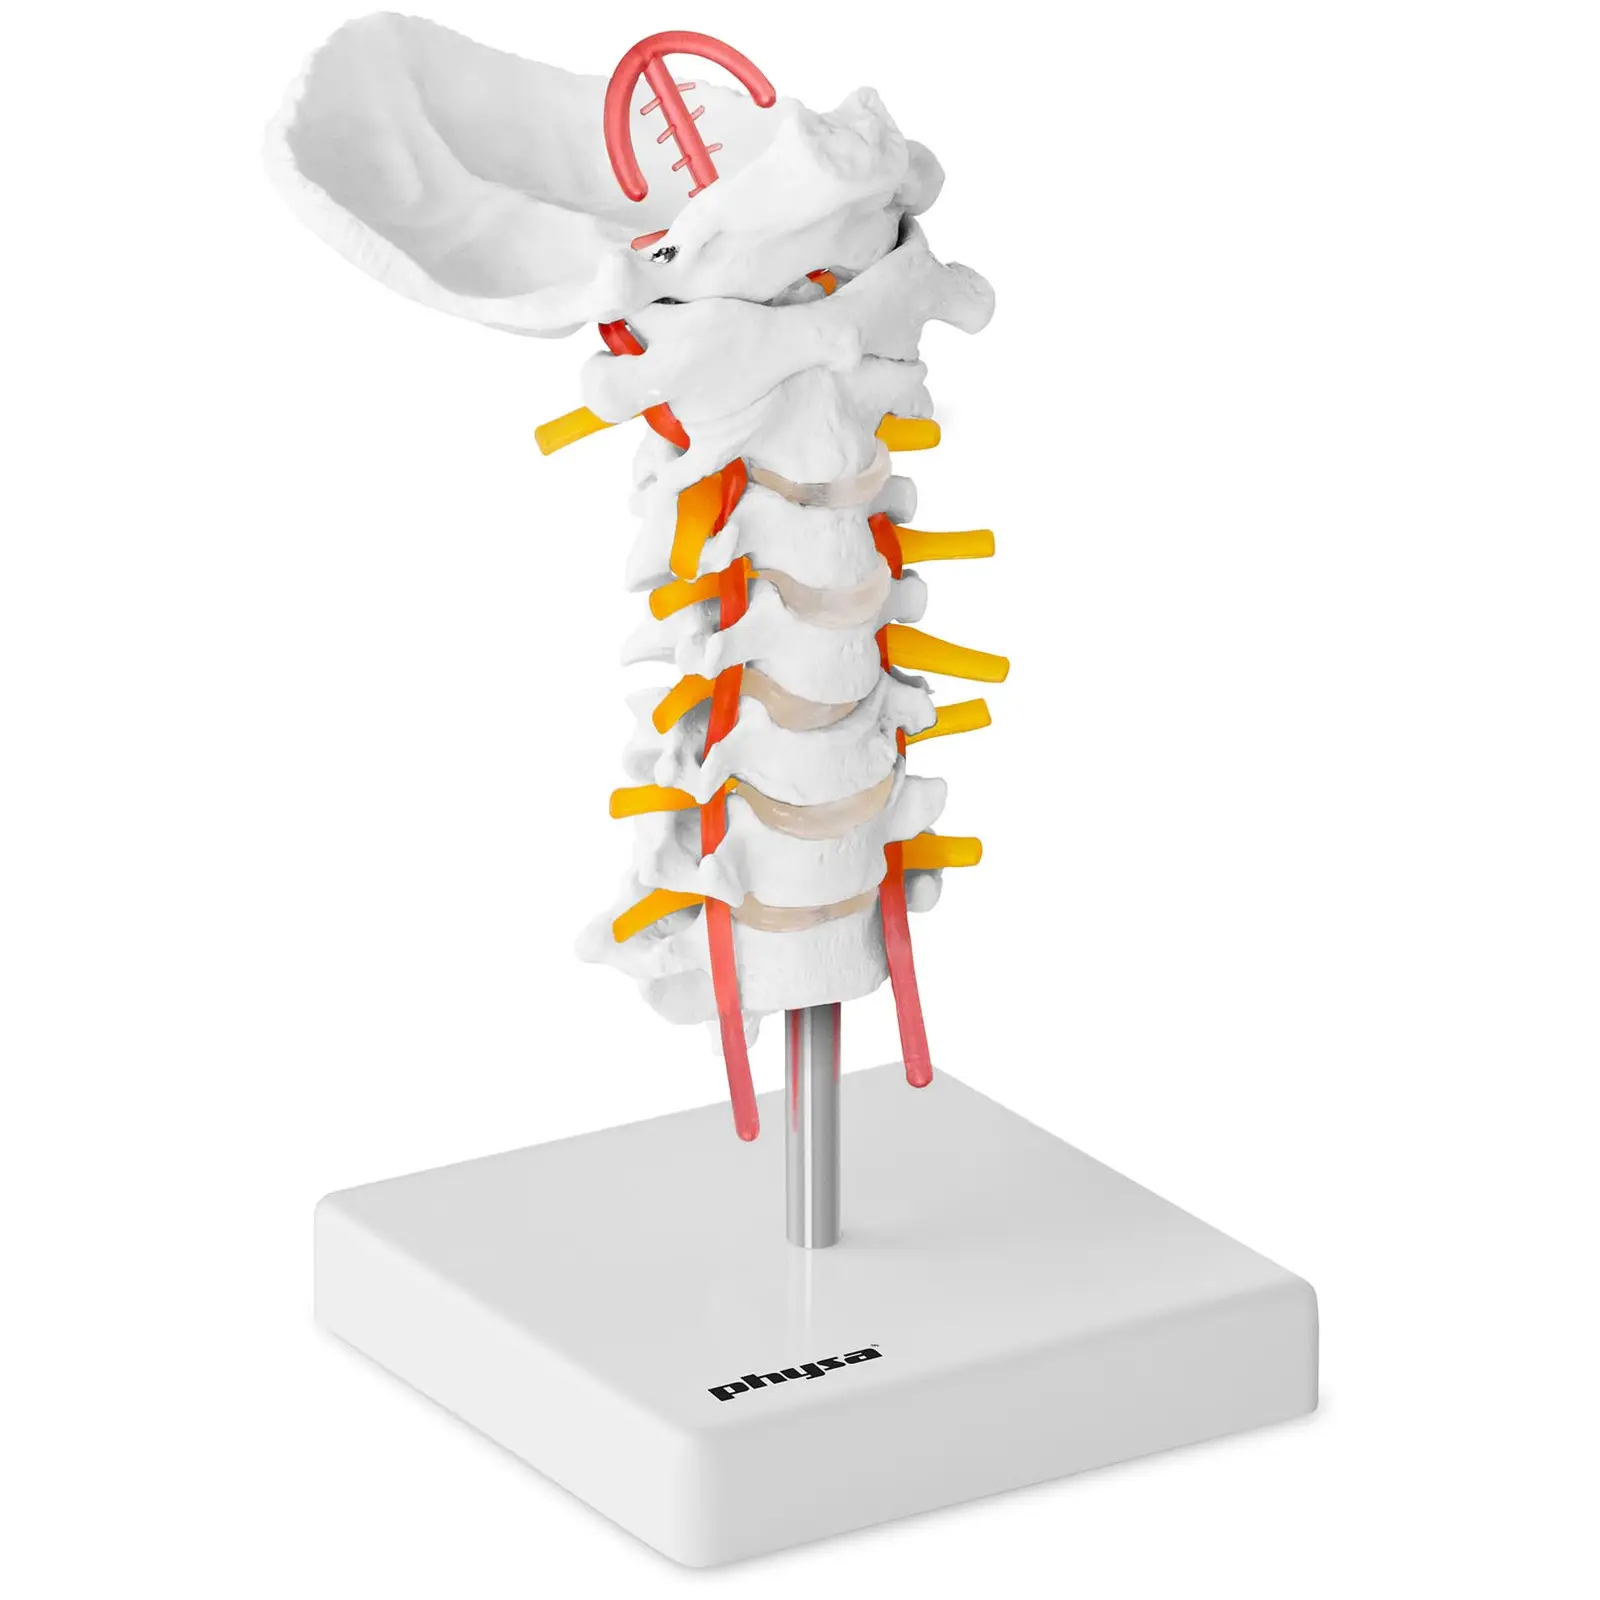 Modelo anatómico de columna cervical - tamaño natural